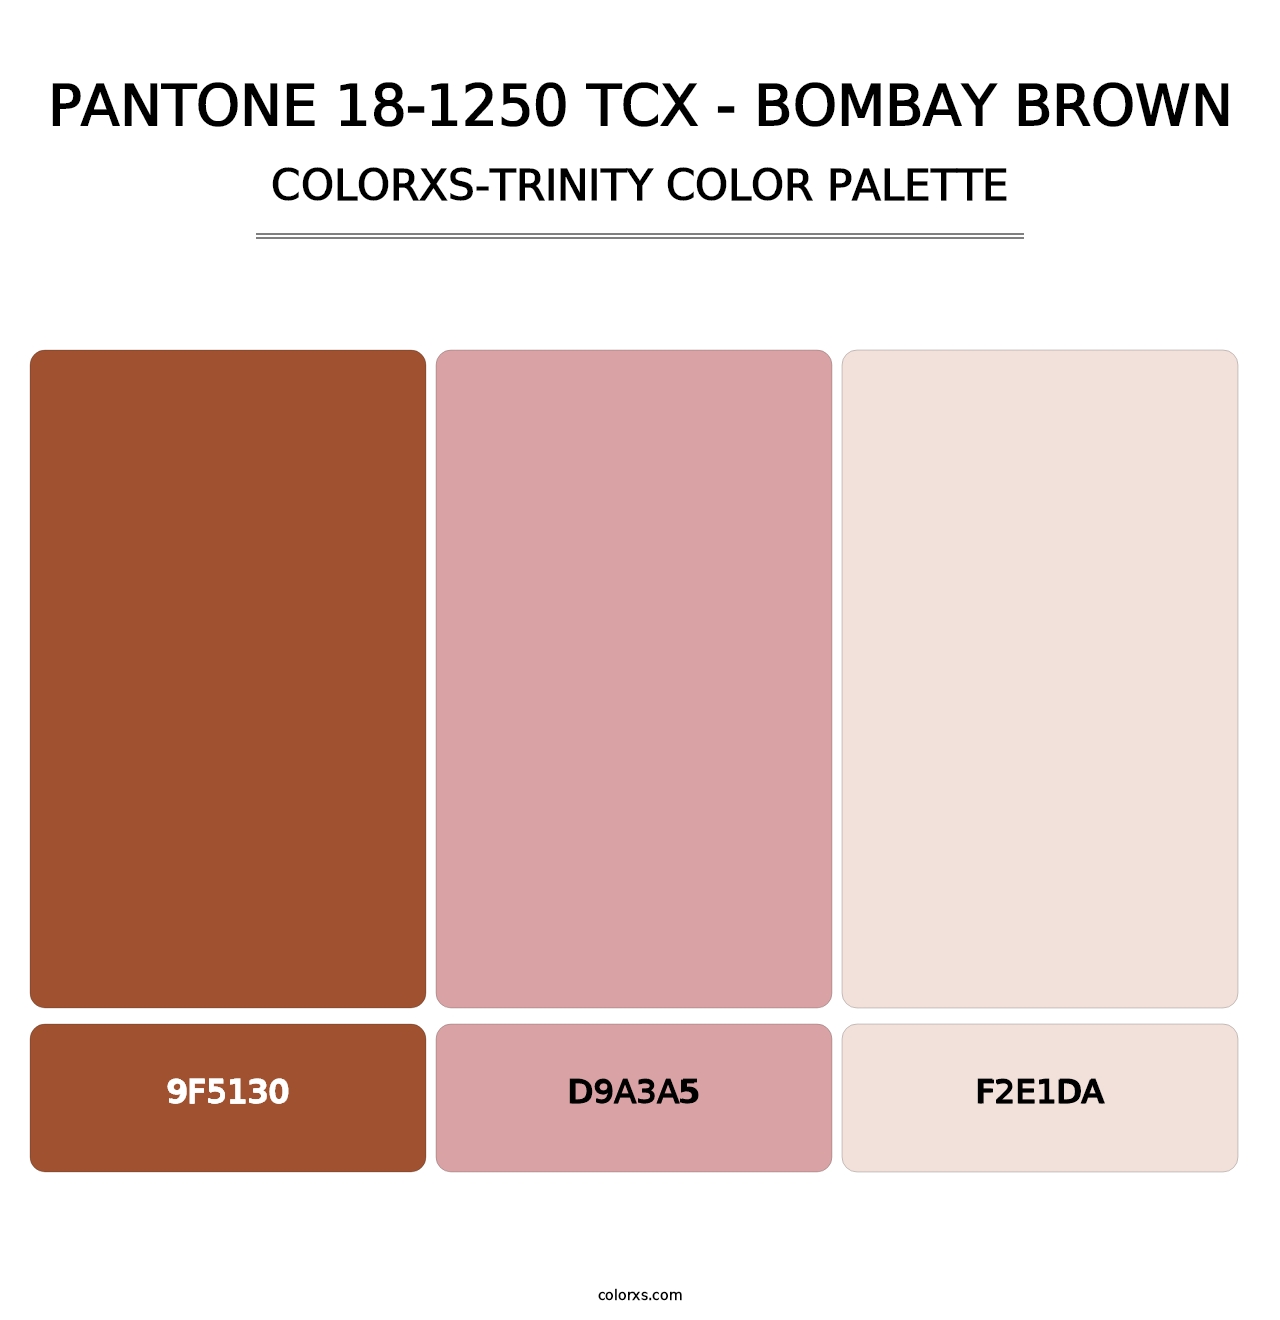 PANTONE 18-1250 TCX - Bombay Brown - Colorxs Trinity Palette